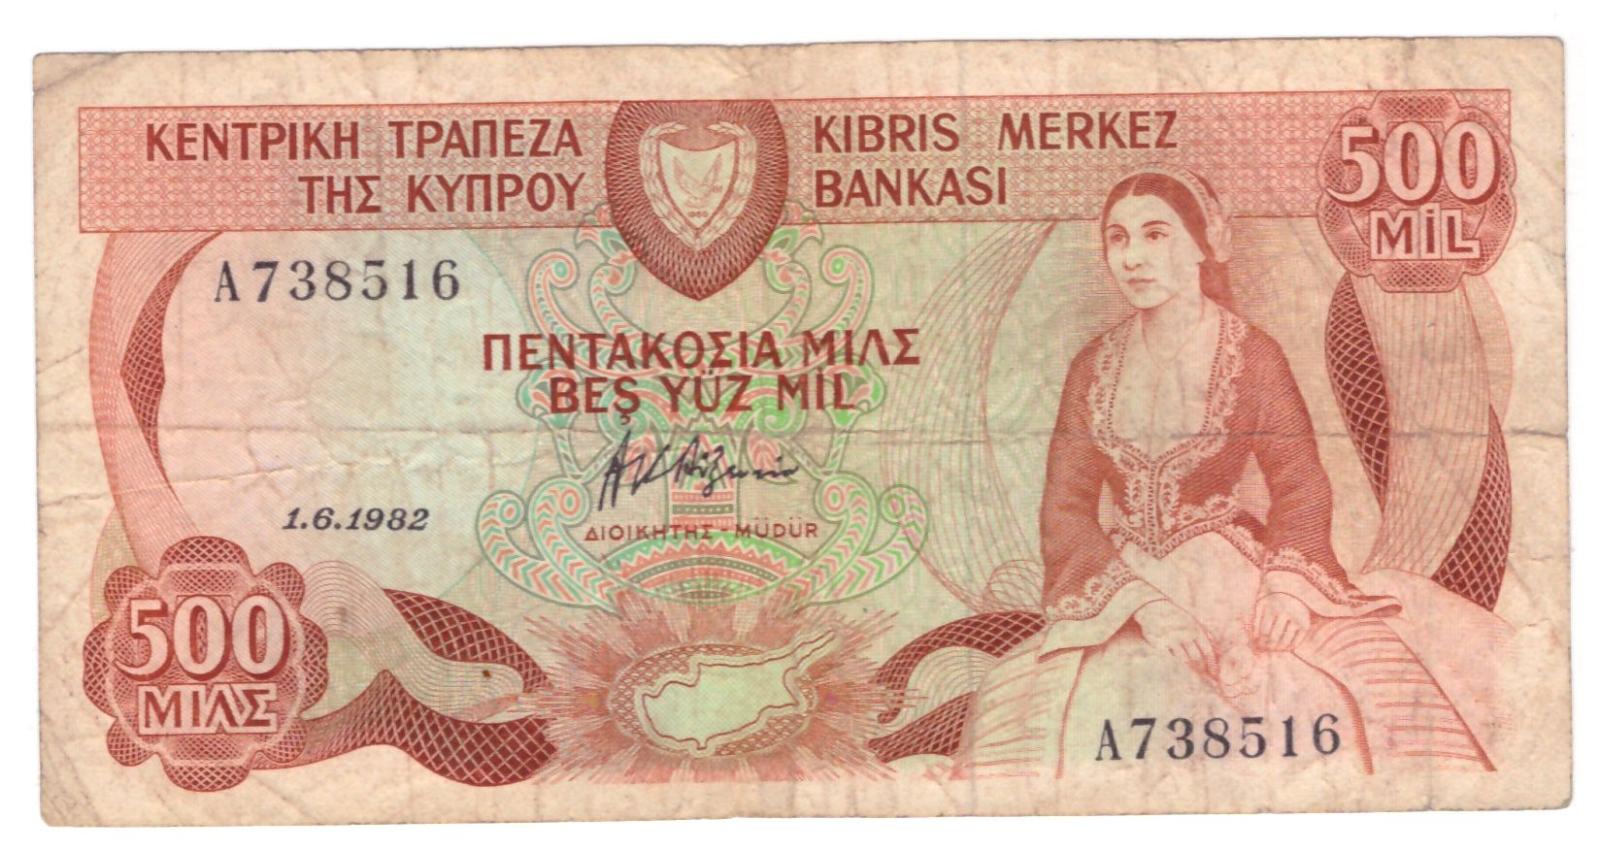 Kypr 500 Mils 1982 stav F,Pick 45 - Bankovky